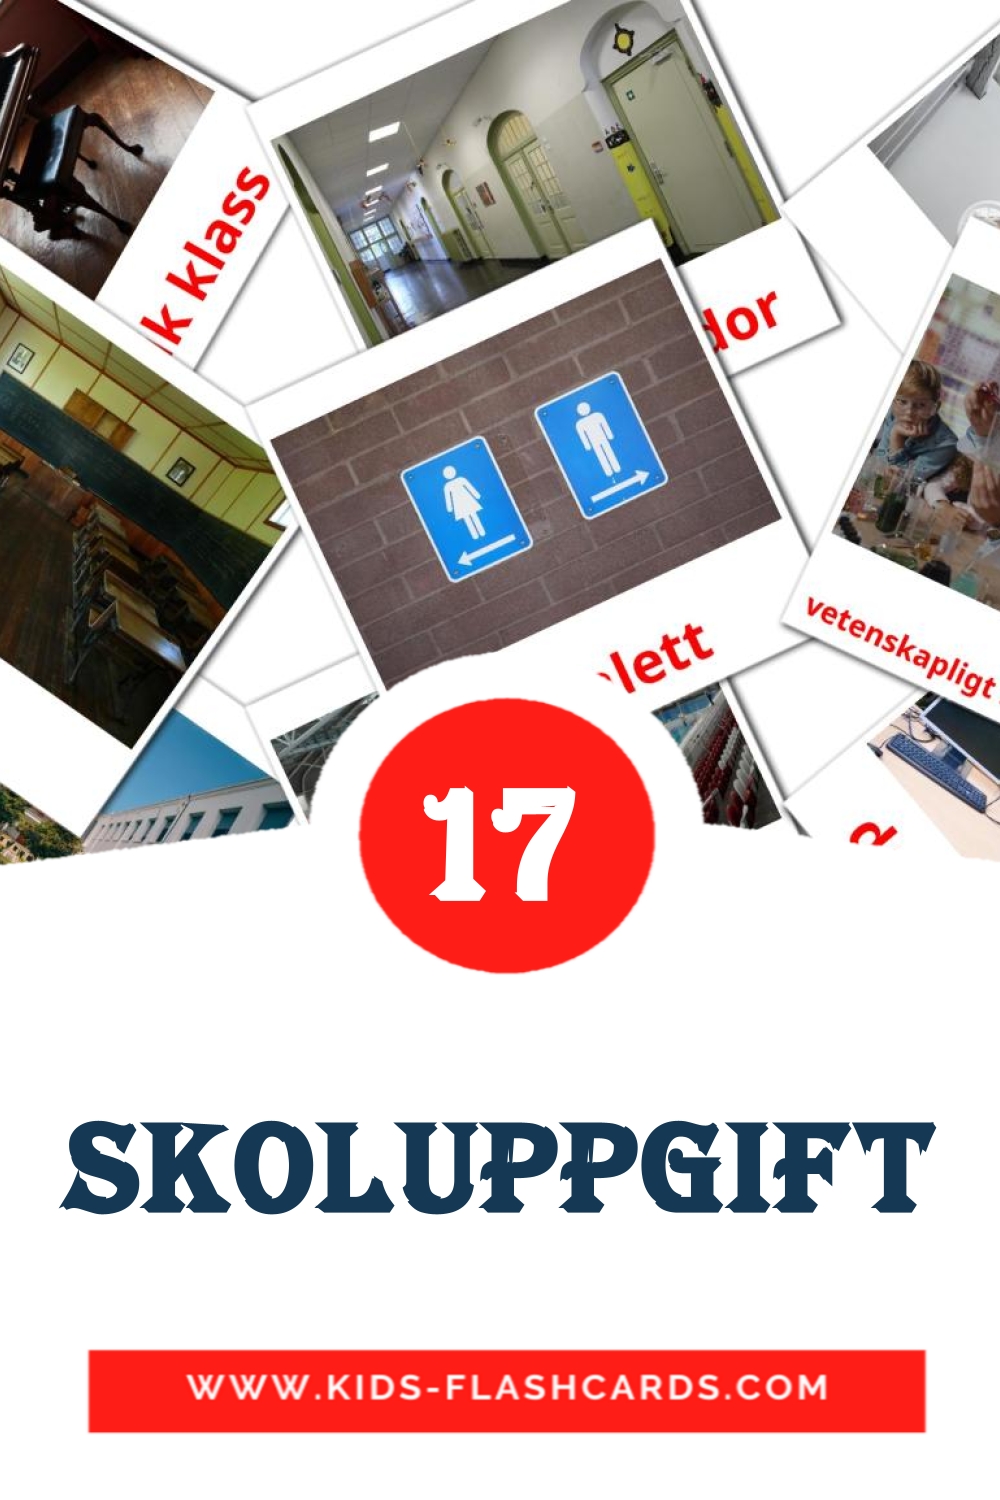 17 Skoluppgift Bildkarten für den Kindergarten auf Schwedisch